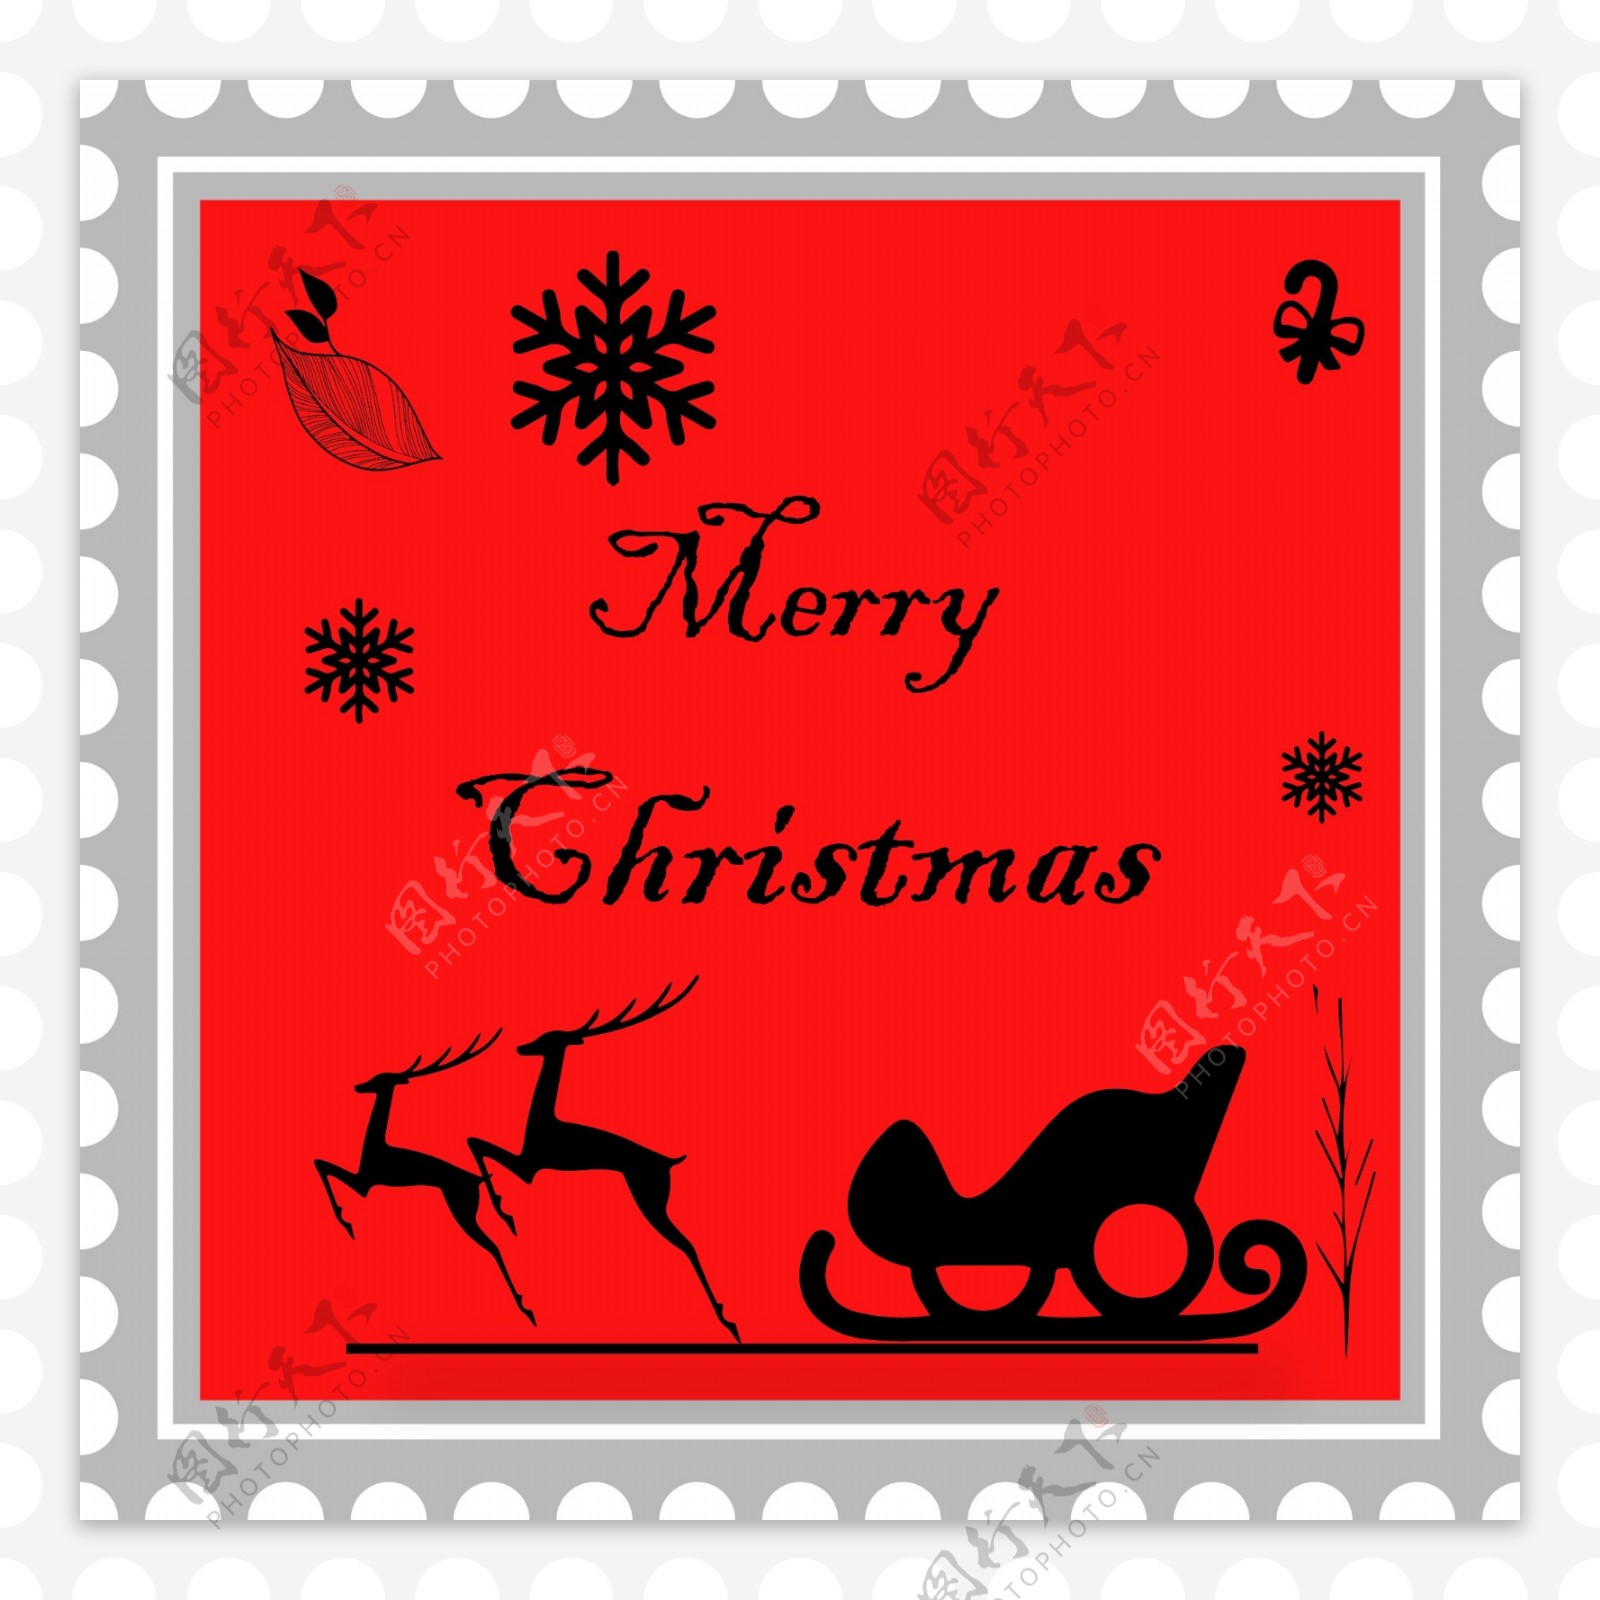 红色蒙版圣诞简约邮票小贴纸